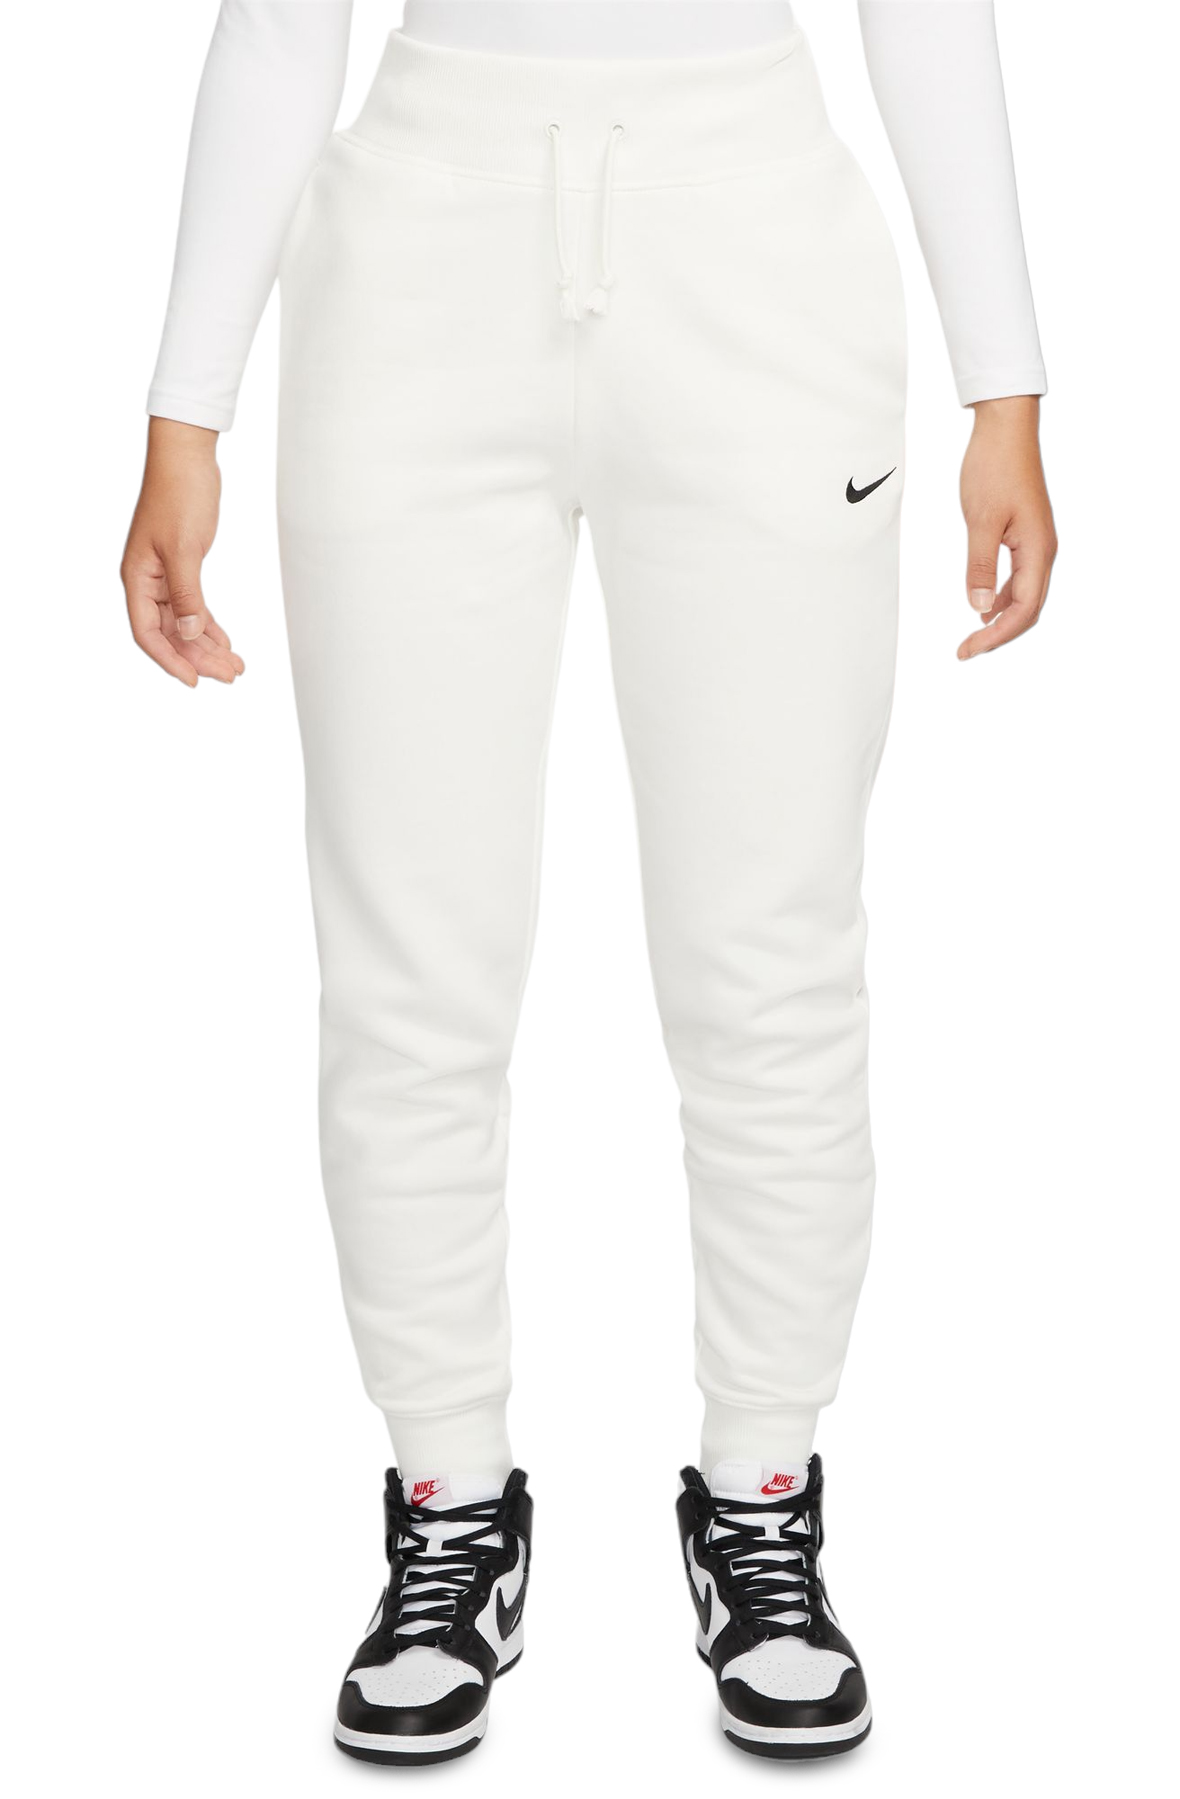 Nike Women's Sportswear Phoenix Fleece Joggers - DQ5688-010 - Black - XS